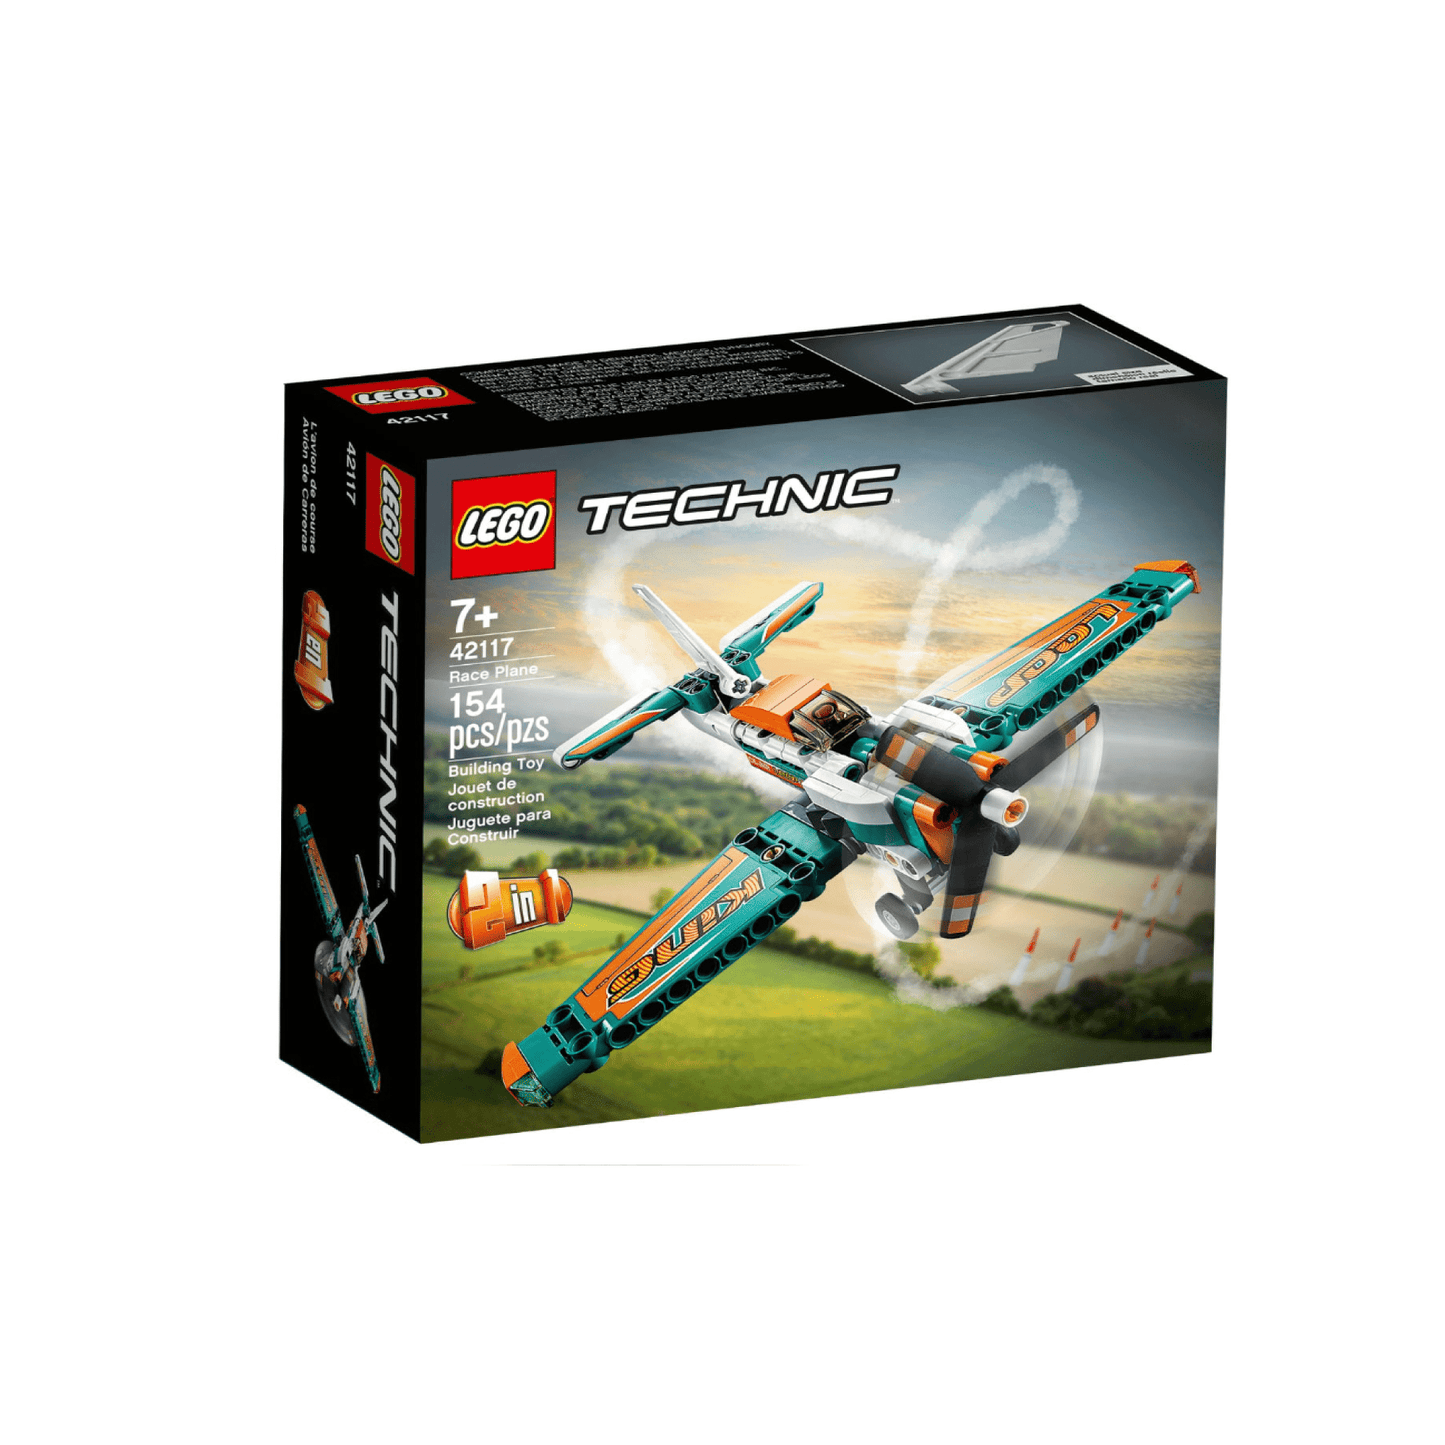 Avion Lego de Carreras